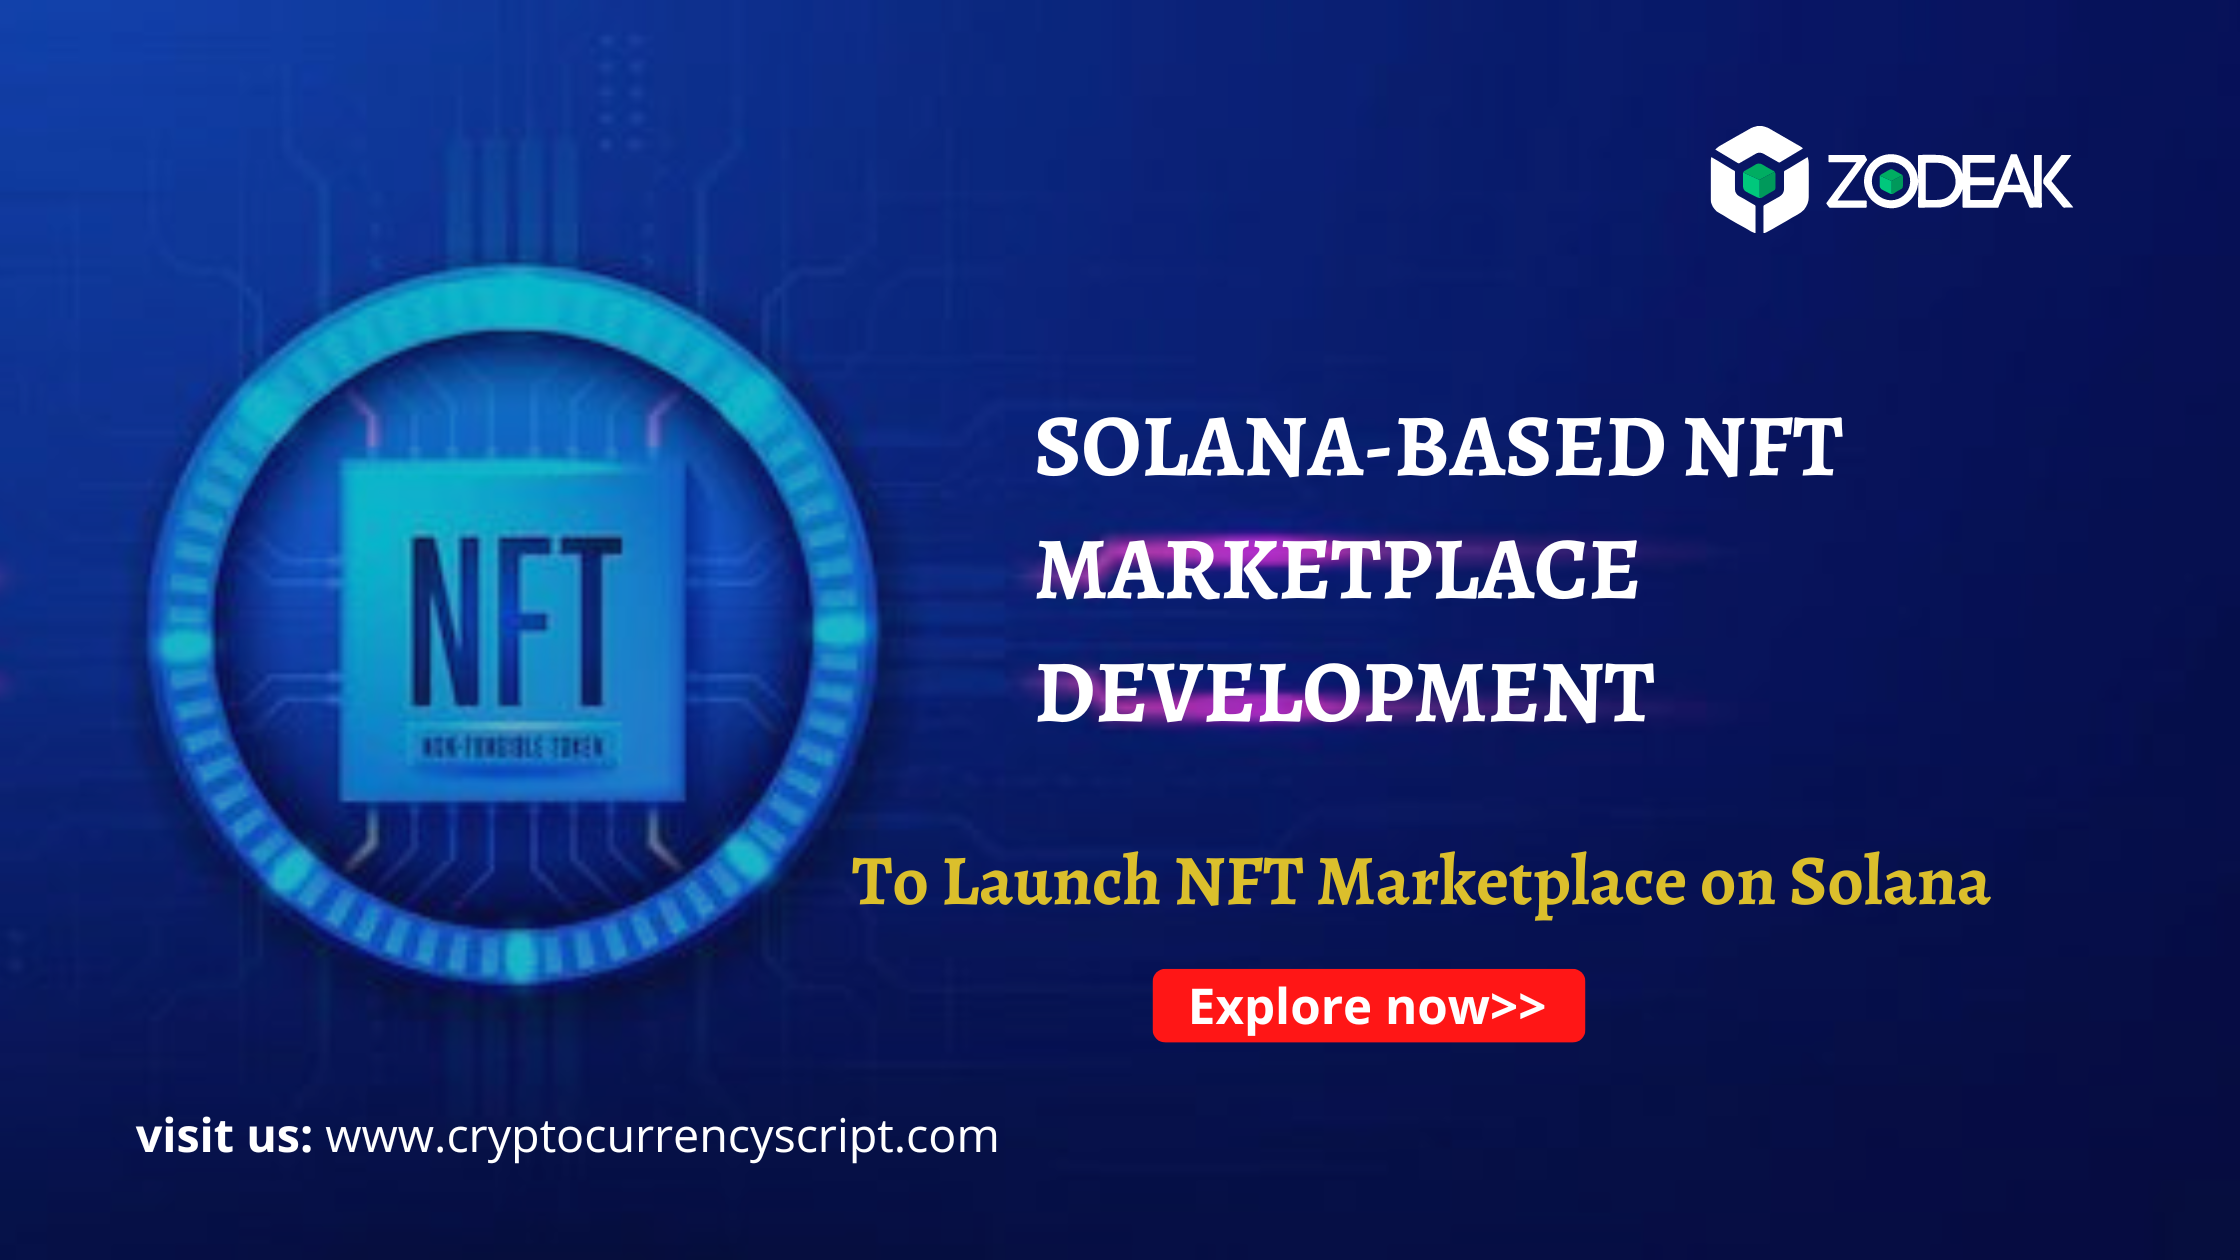 Develop NFT Marketplace on Solana - Zodeak